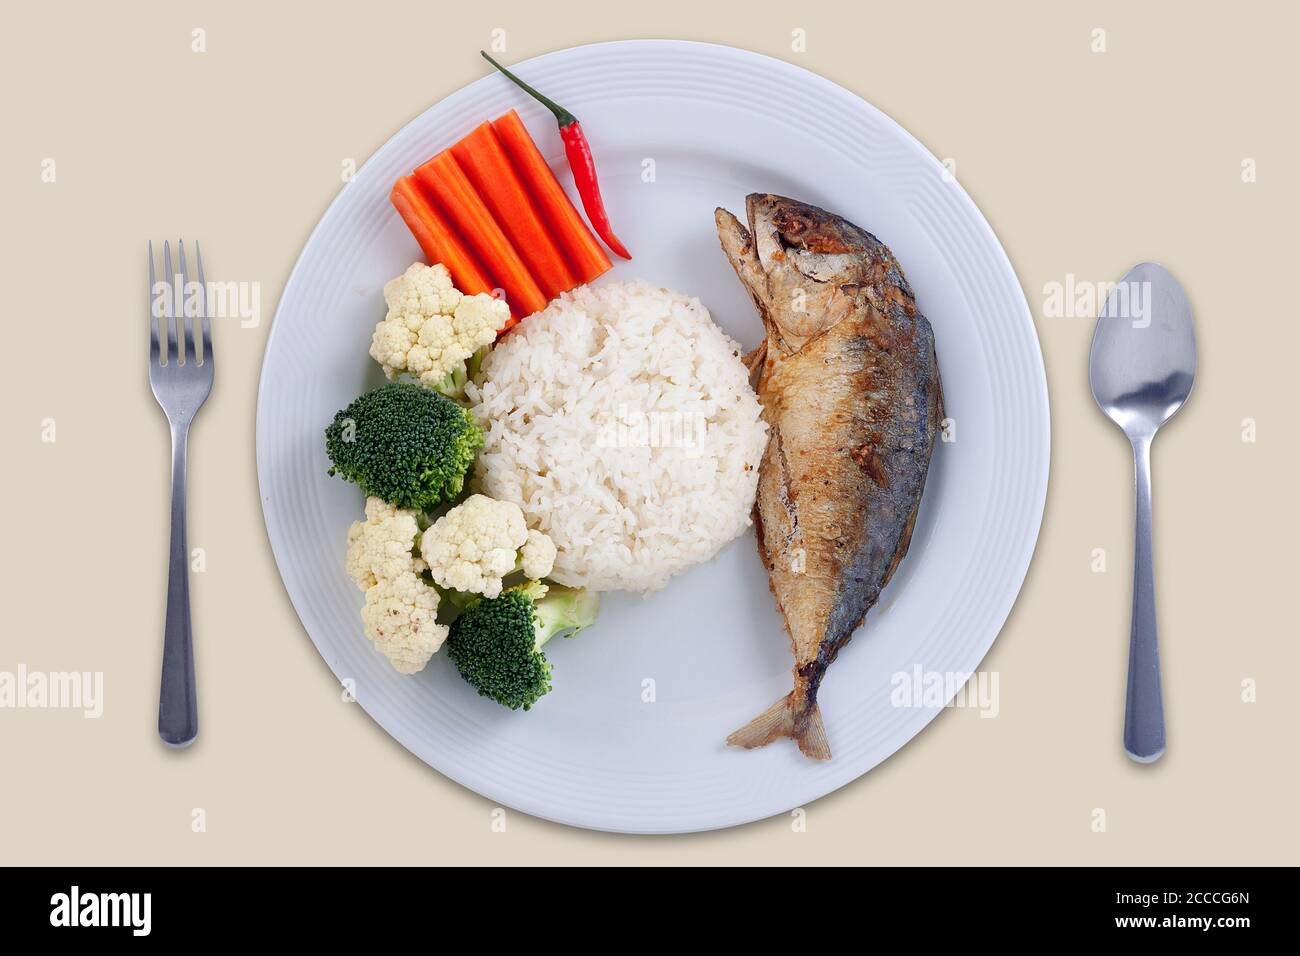 Concept de nourriture saine : poisson maquereau avec différentes garnitures de légumes sur le riz, nourriture propre Banque D'Images